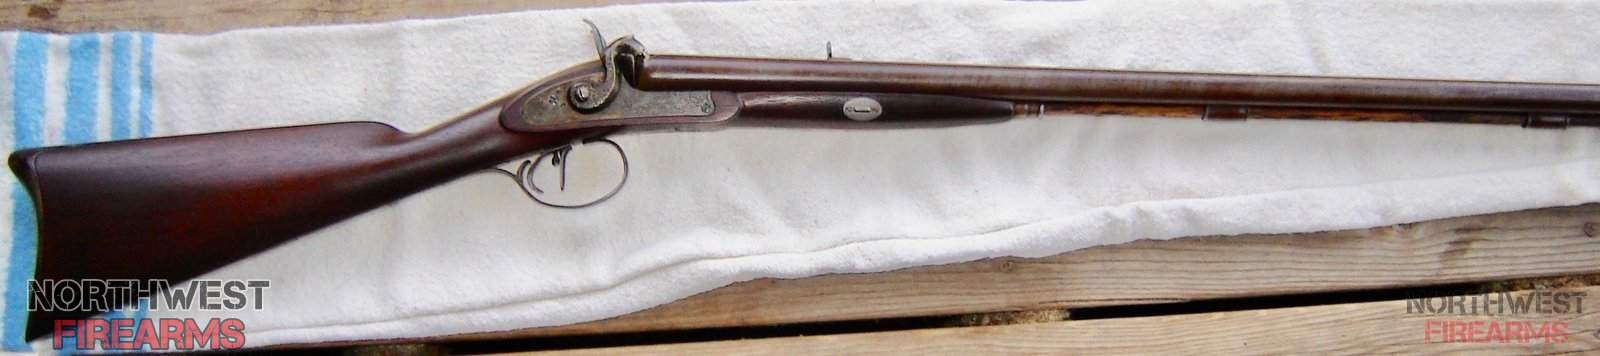 Combination gun...circa 1840-1860's